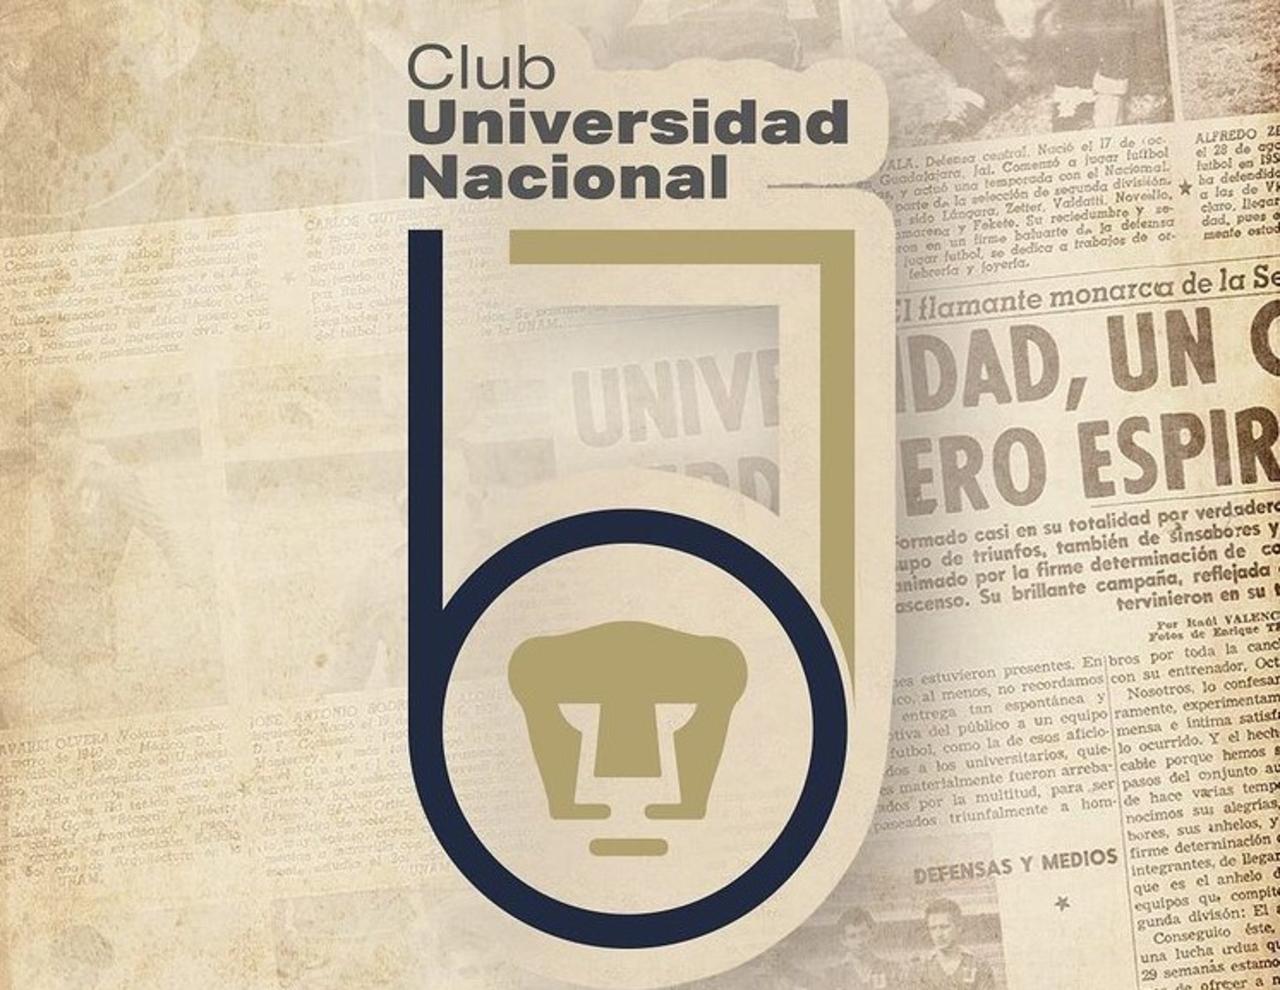 Hace 67 años, el 12 de septiembre de 1954, el club Universidad Nacional jugaba su primer partido en el futbol profesional de México, este fue un duelo de la Segunda División ante el Monterrey, donde cayó 3-1. El equipo era dirigido por Rodolfo Muñoz Castro.